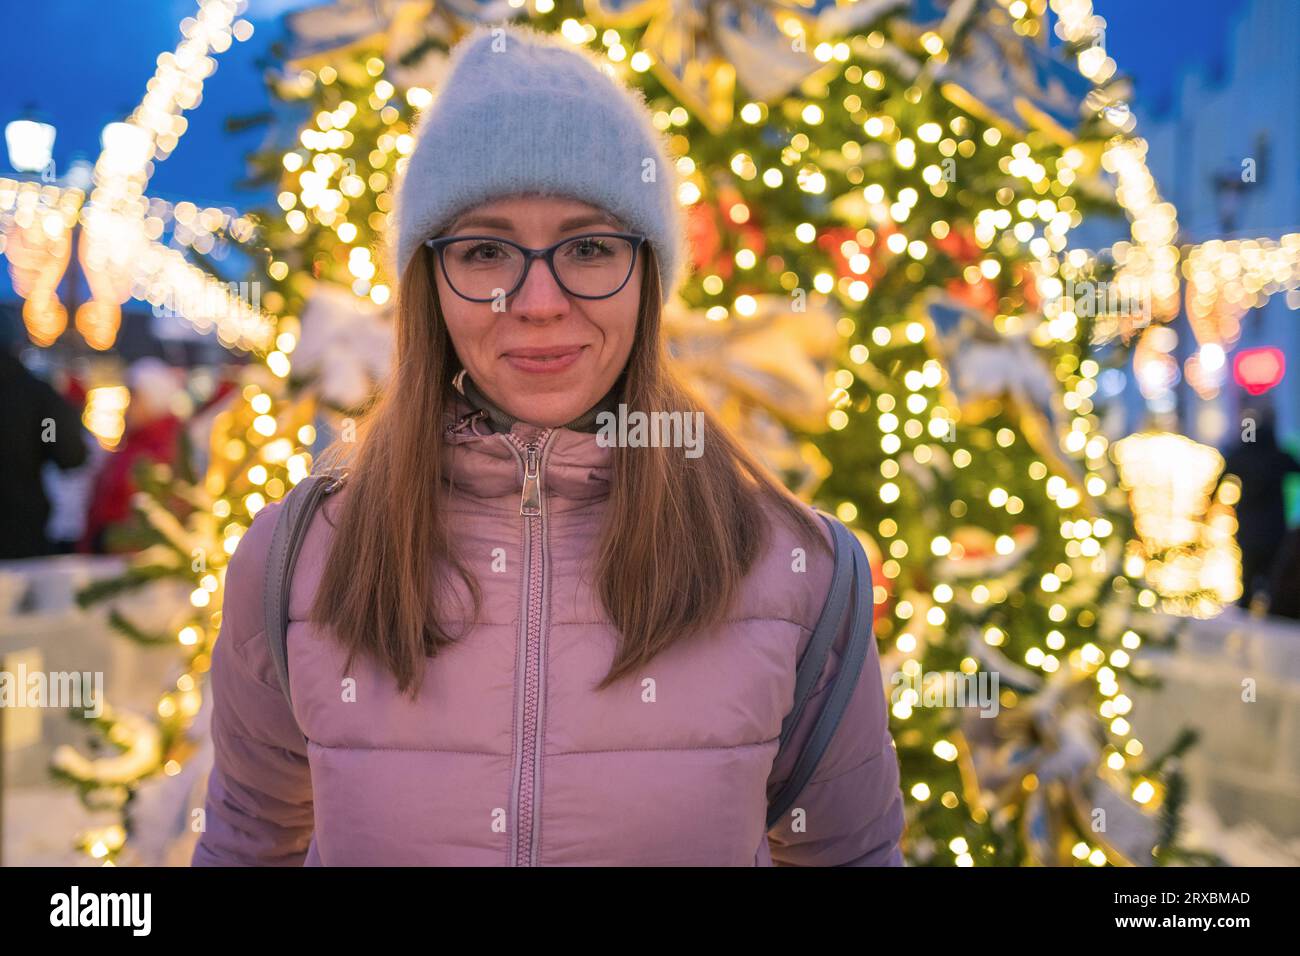 Tolle Urlaubsmomente: Glückliche Frau posiert in der festlichen Silvesterstraße. Stockfoto